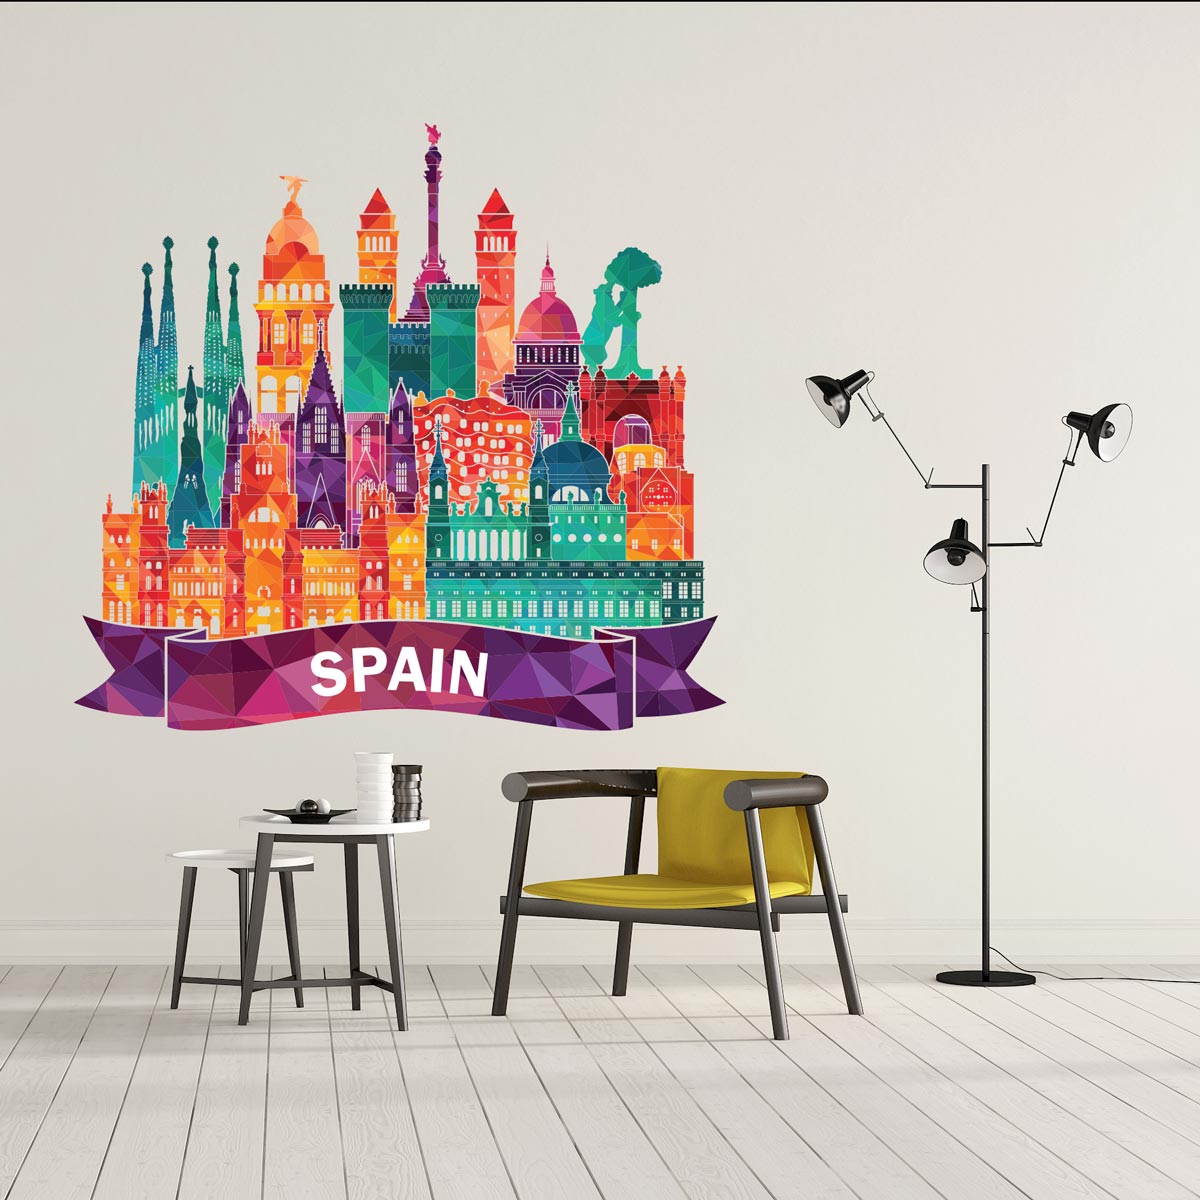 Sticker Espagne Coloré - Stickers Espagne